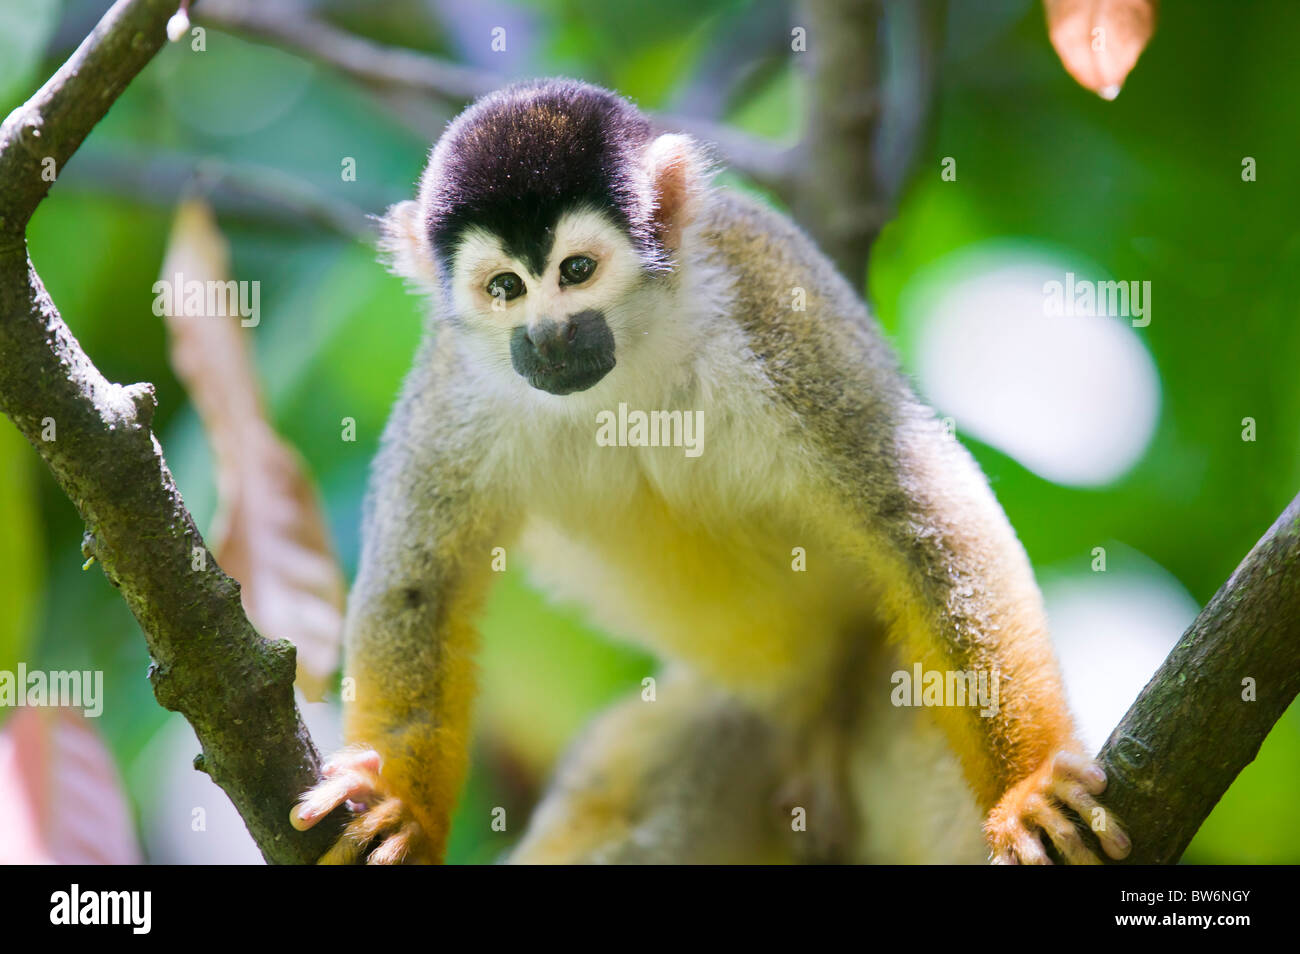 Mono ardilla, Tiskita común, en el sur de Costa Rica, Centroamérica Foto de stock